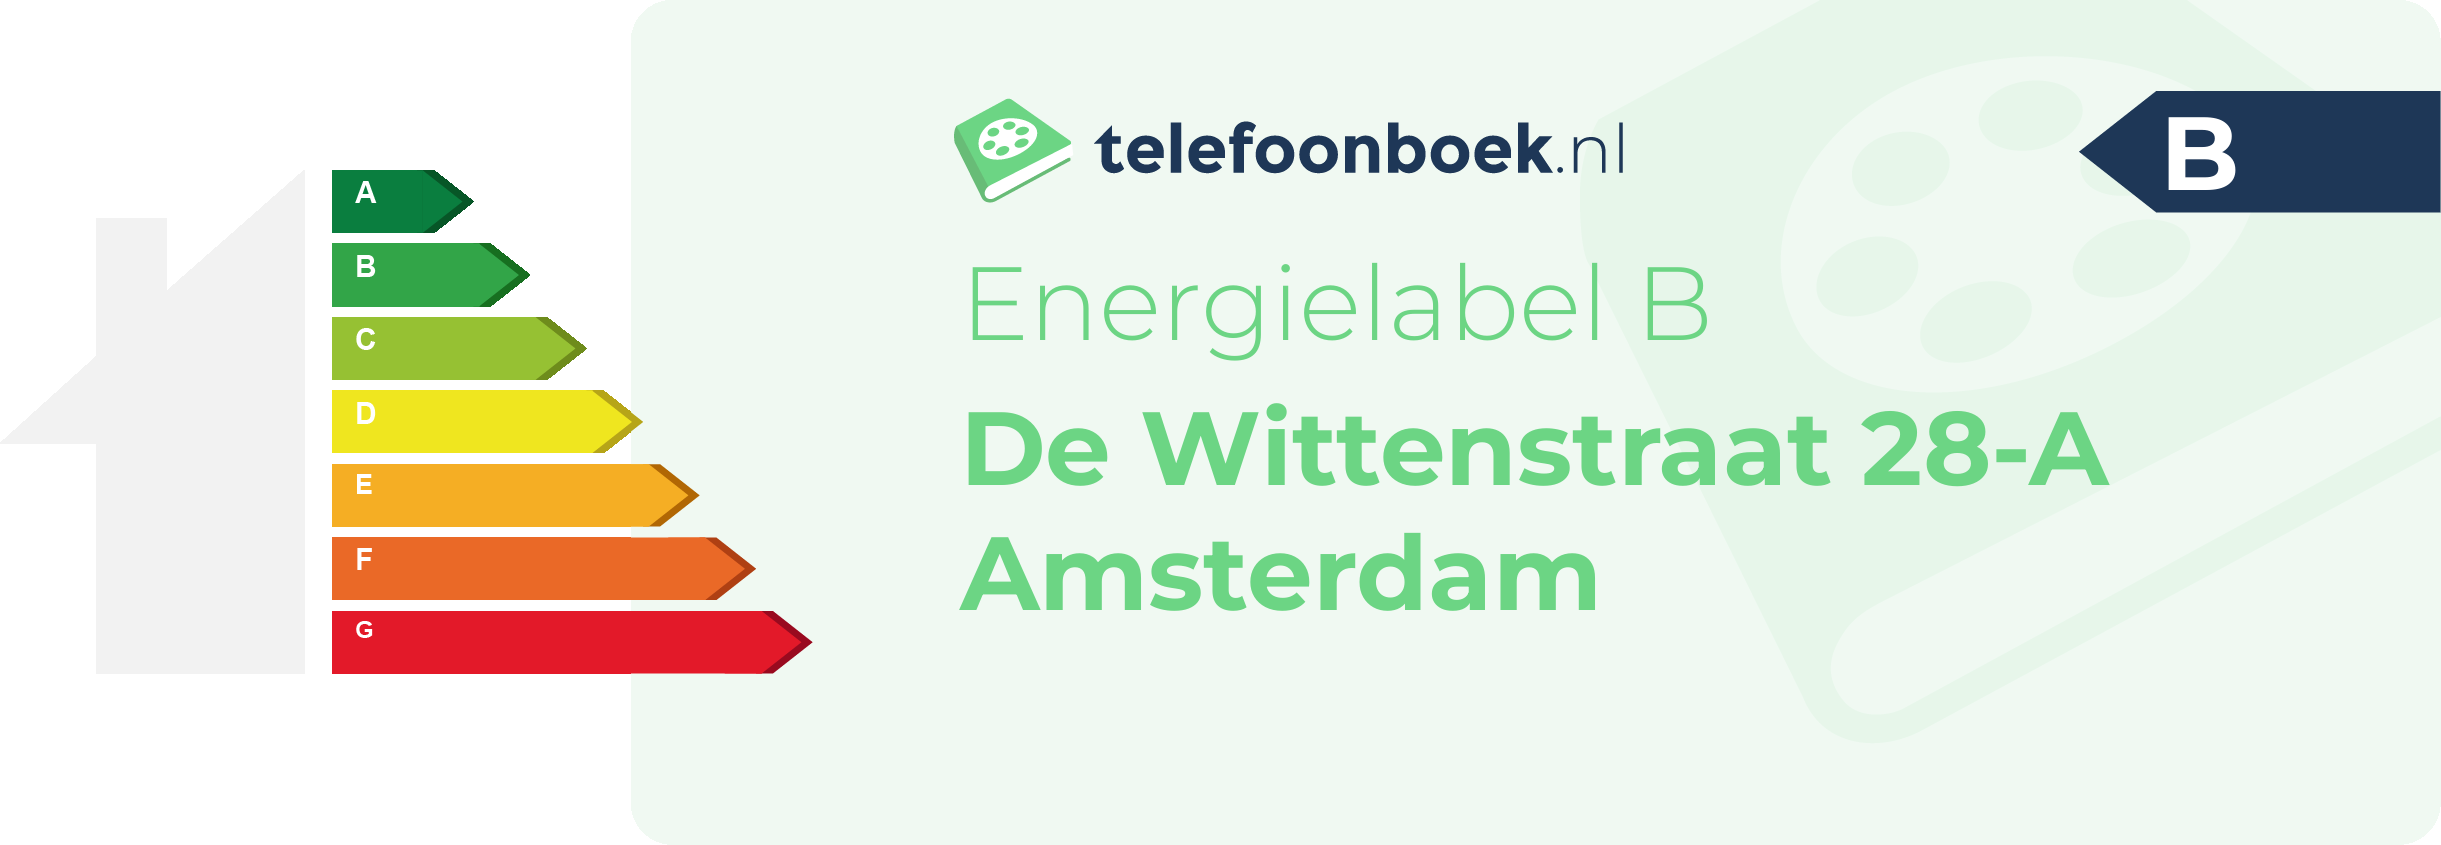 Energielabel De Wittenstraat 28-A Amsterdam